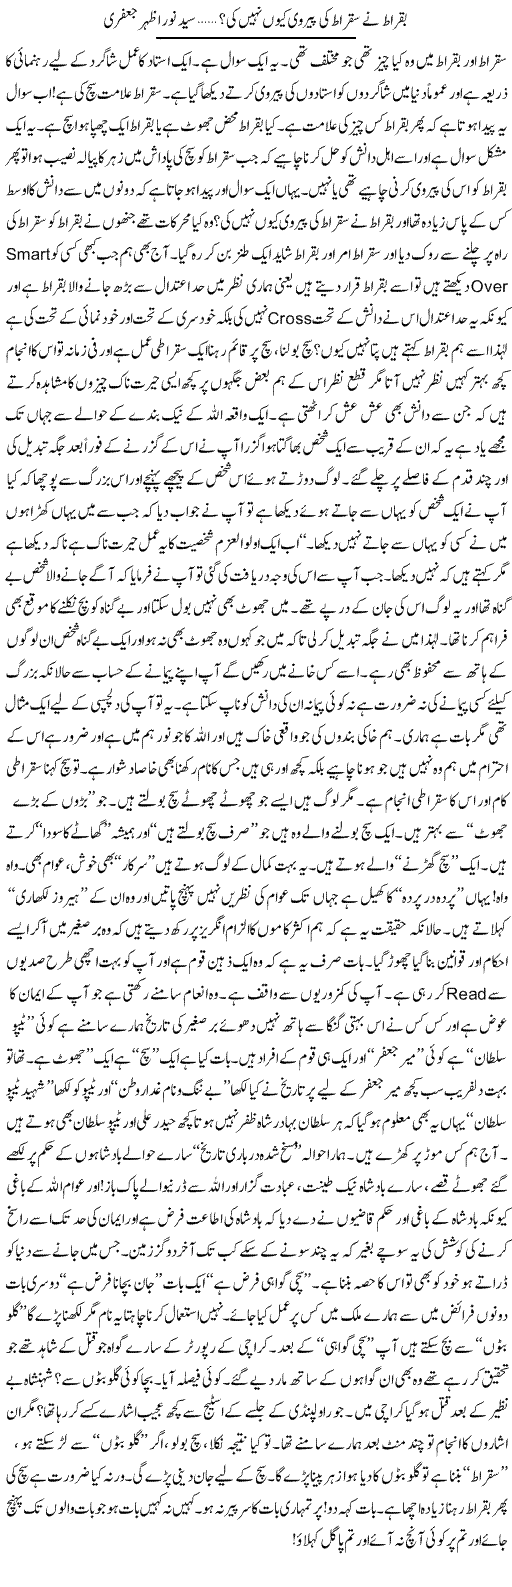 Buqrat Ne Suqrat Ki Pairawi Kion Nahi Ki? | Syed Noor Azhar Jaffri | Daily Urdu Columns